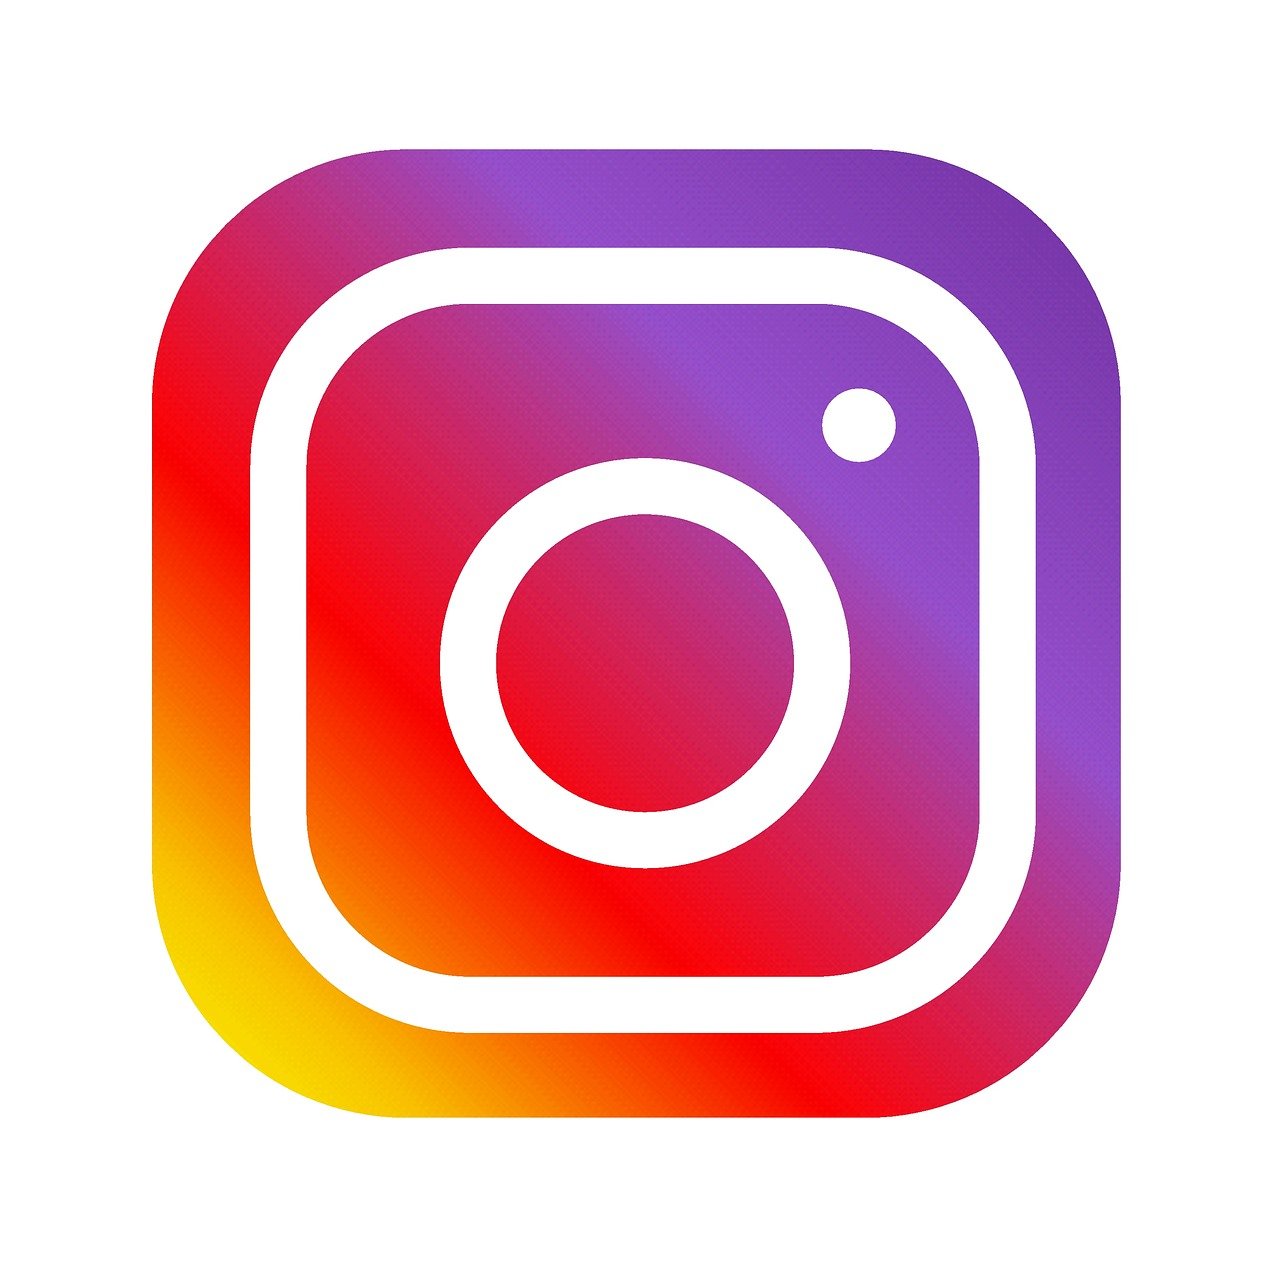 Pane global atinge novamente o Instagram nesta sexta – Hora Campinas